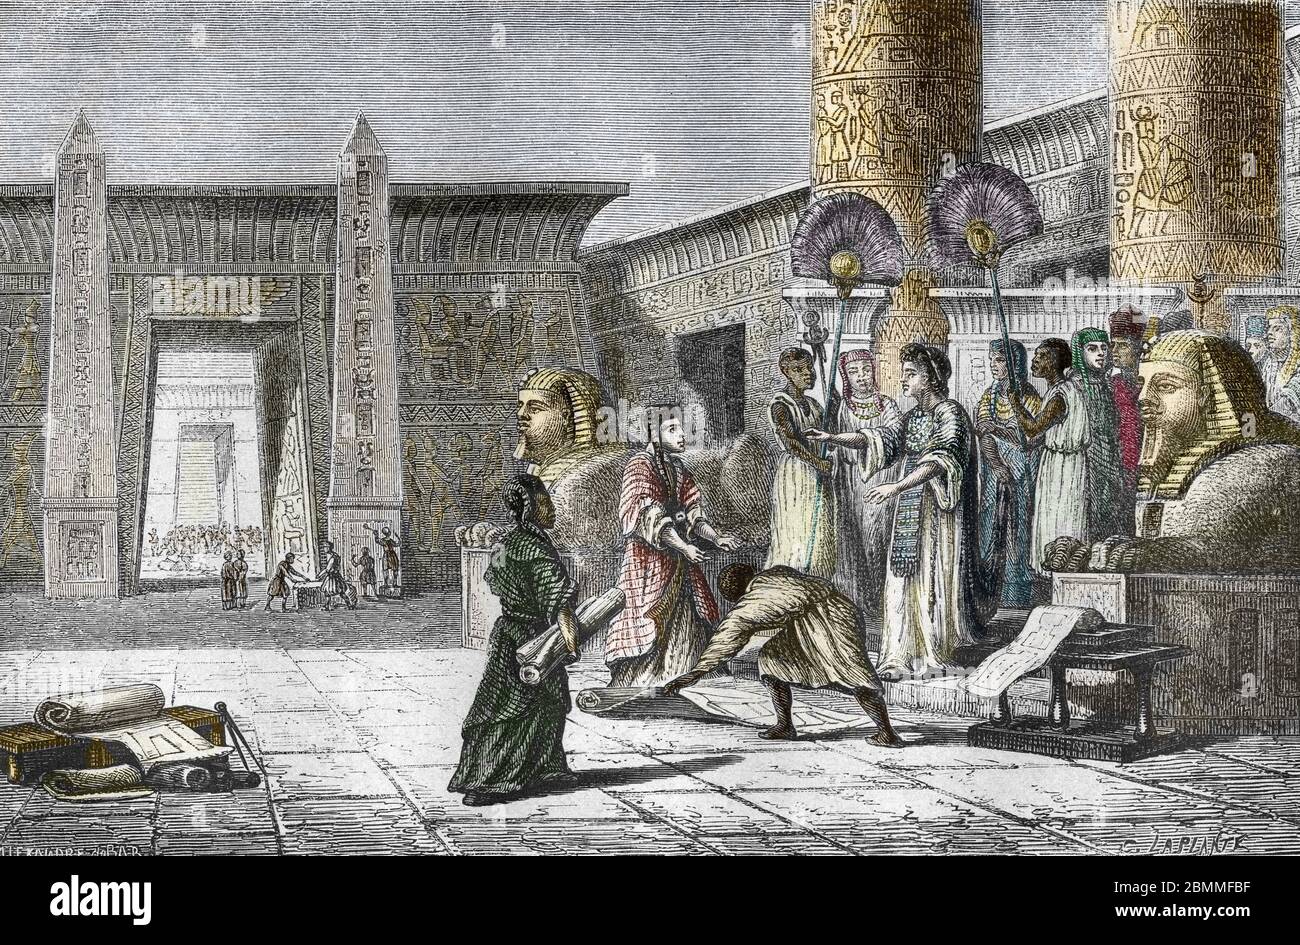 Antiquite egyptienne : 'Le roi d'Egypte Ptolemee Ier Soter (368-283 avant JC) supervisant les travaux de construction de la bibliotheque d'Alexandrie Stock Photo